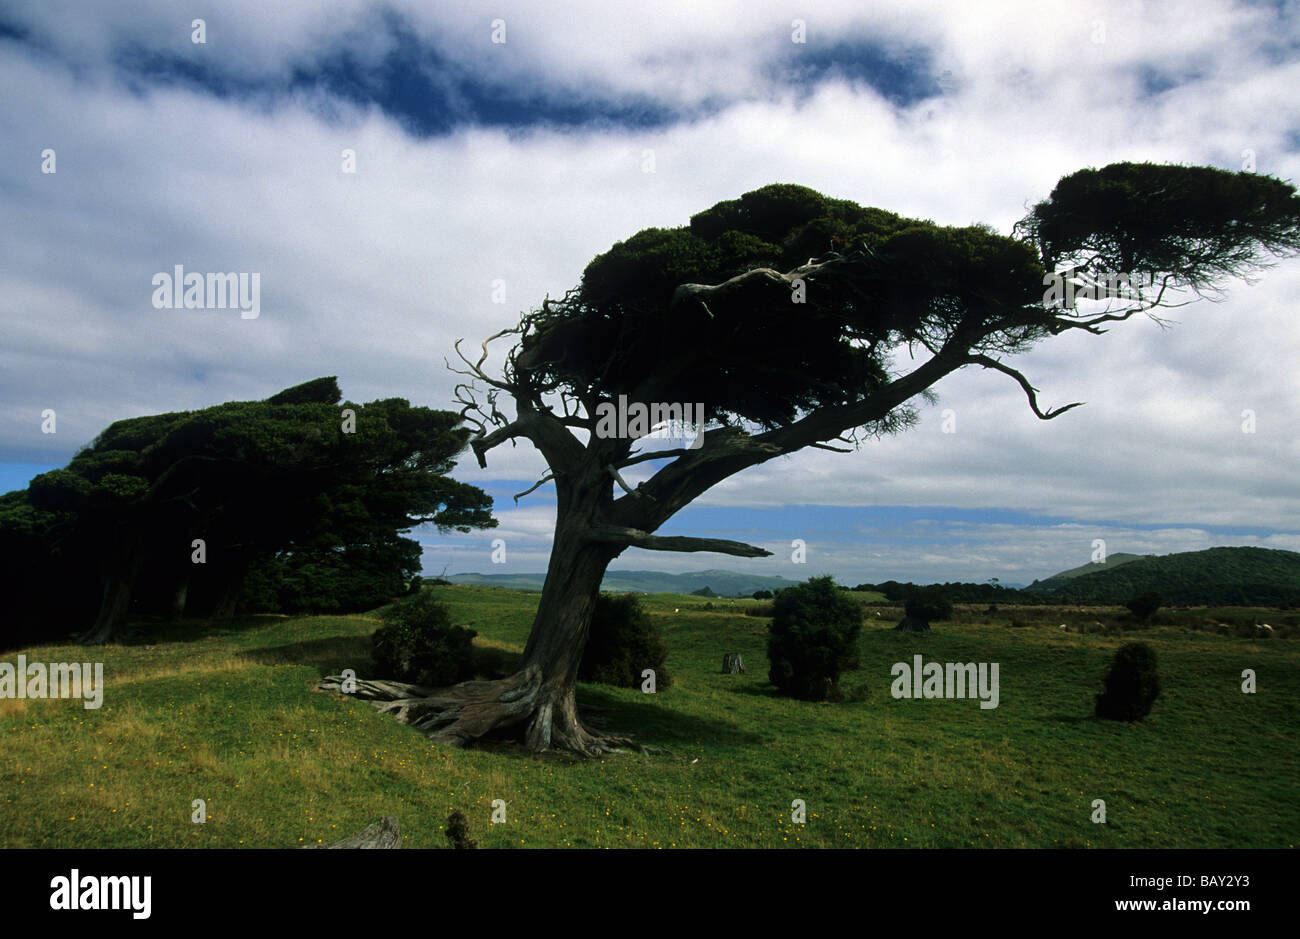 Windswept trees, New Zealand Stock Photo